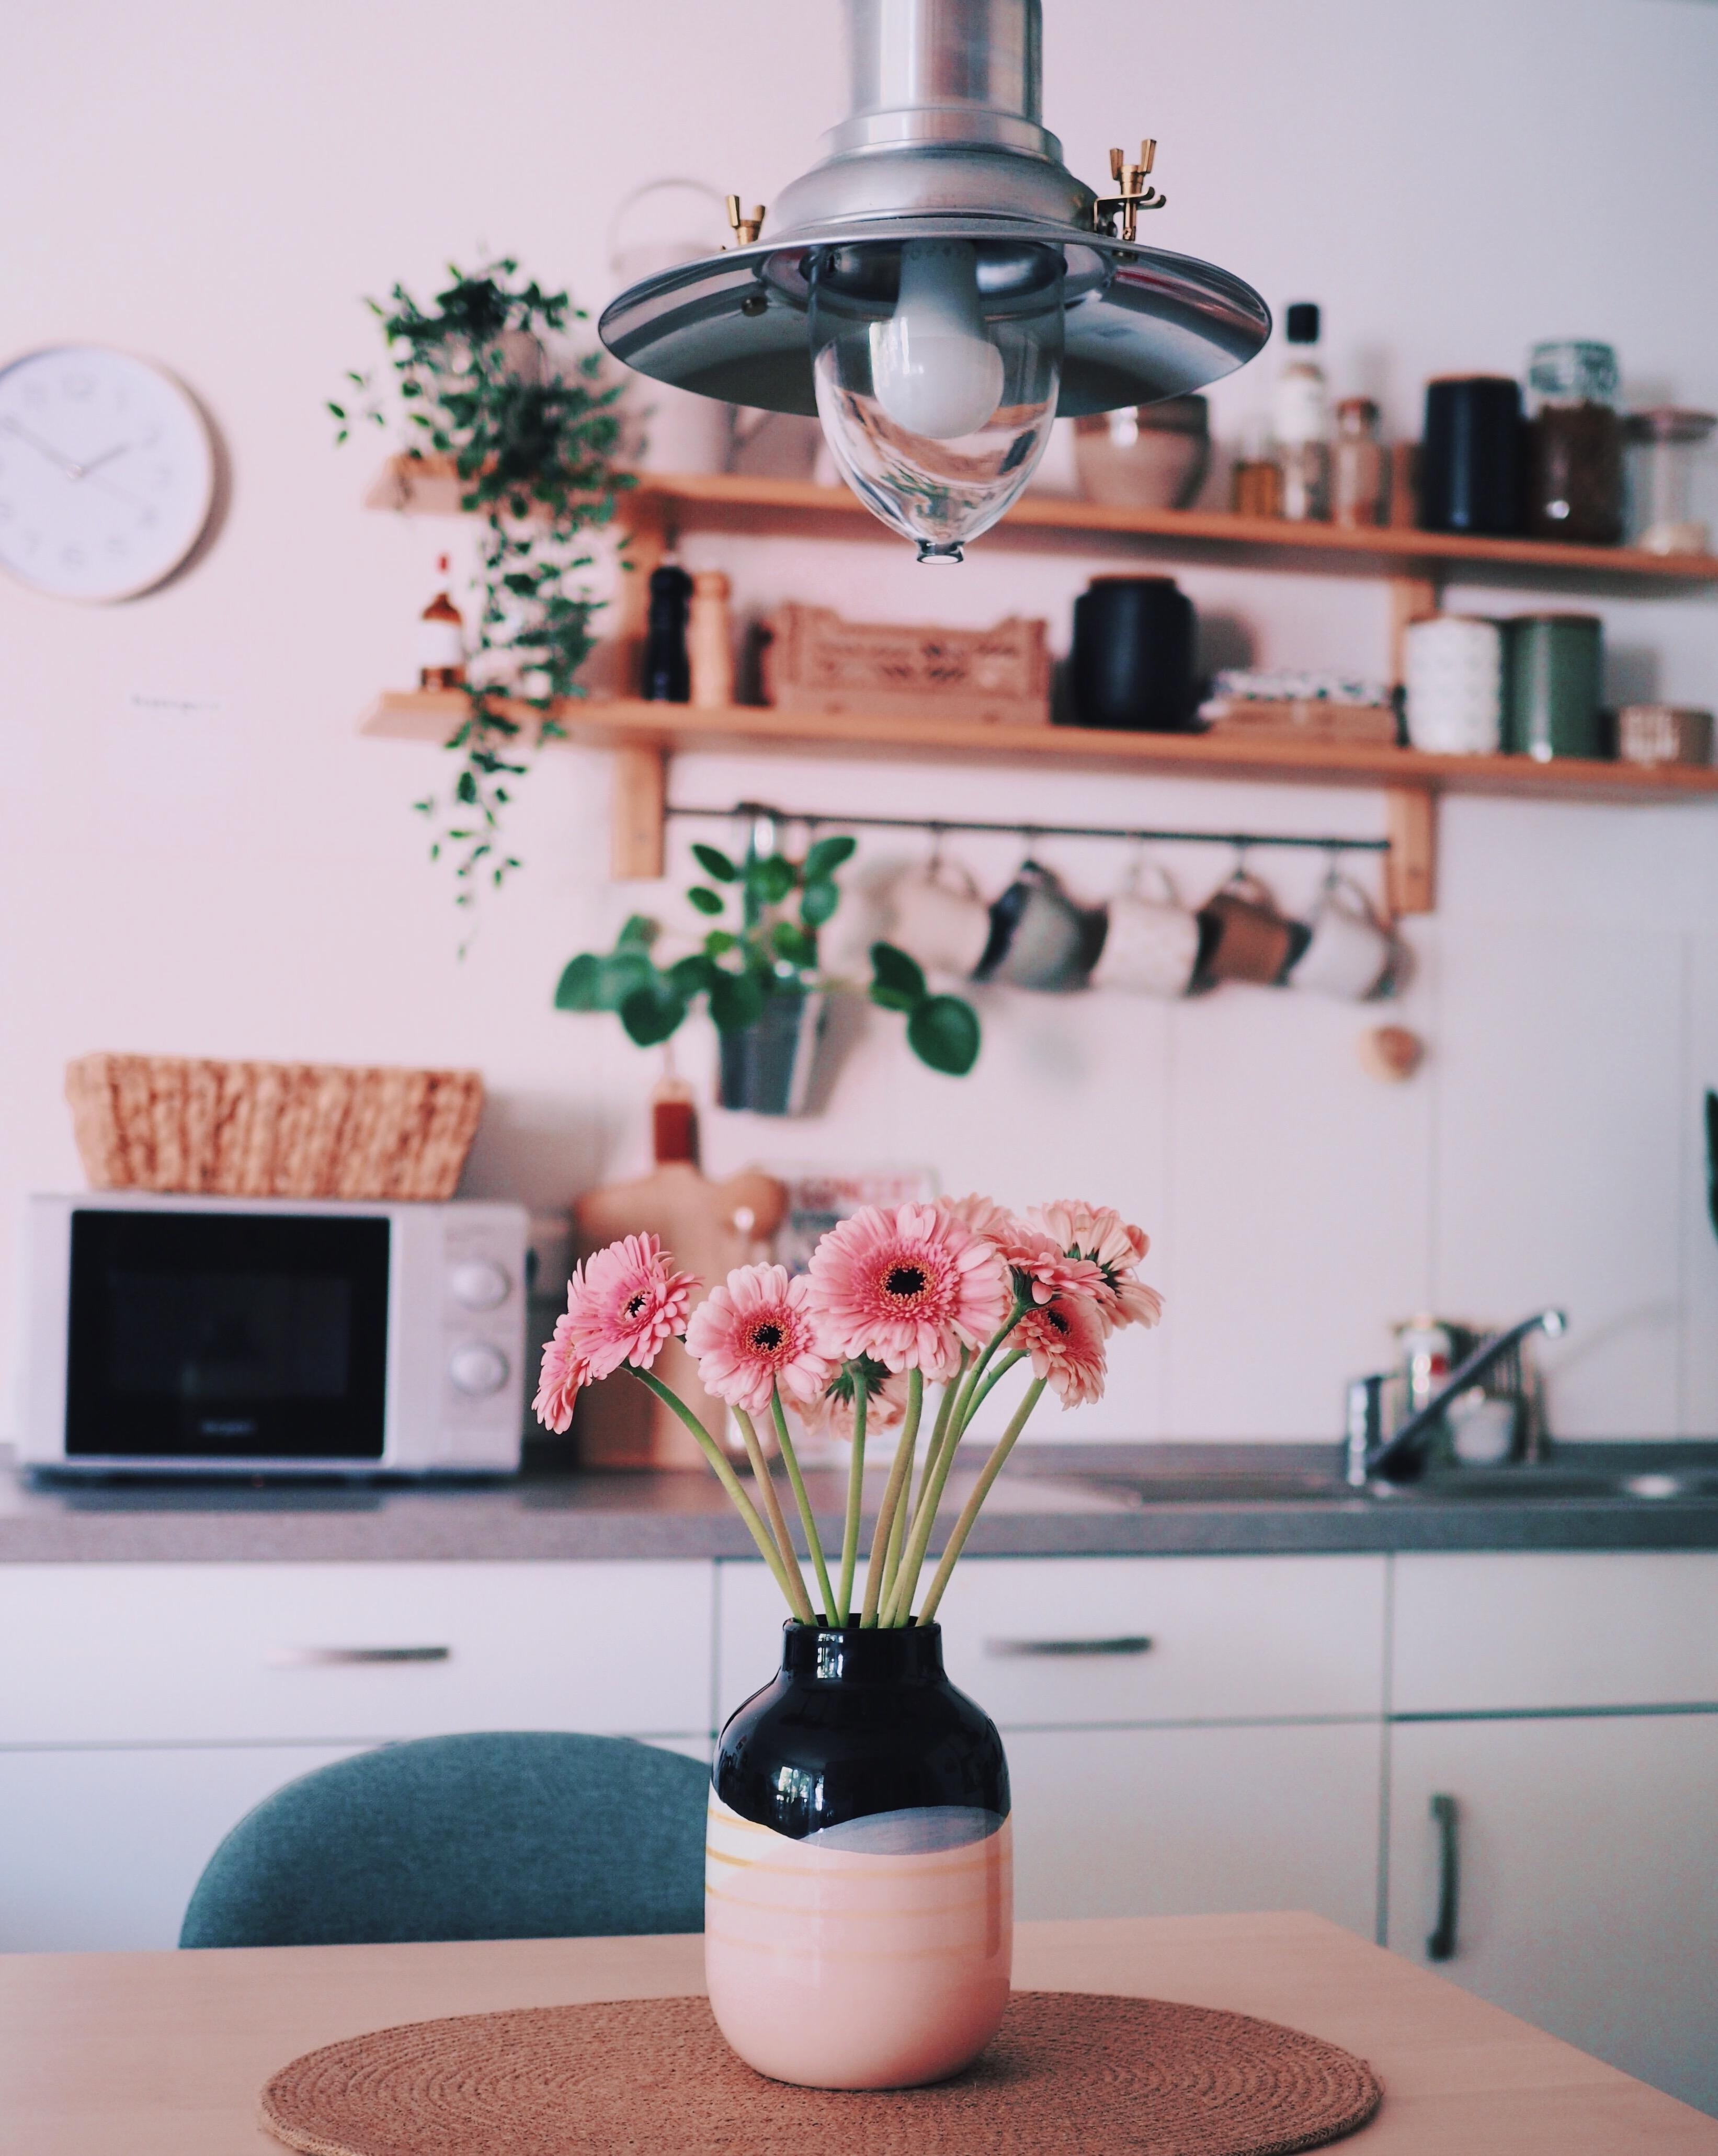 Kitchen flowers. 💓 #couchstyle #küche #kleineküche #freshflowers #lieblingsvase 